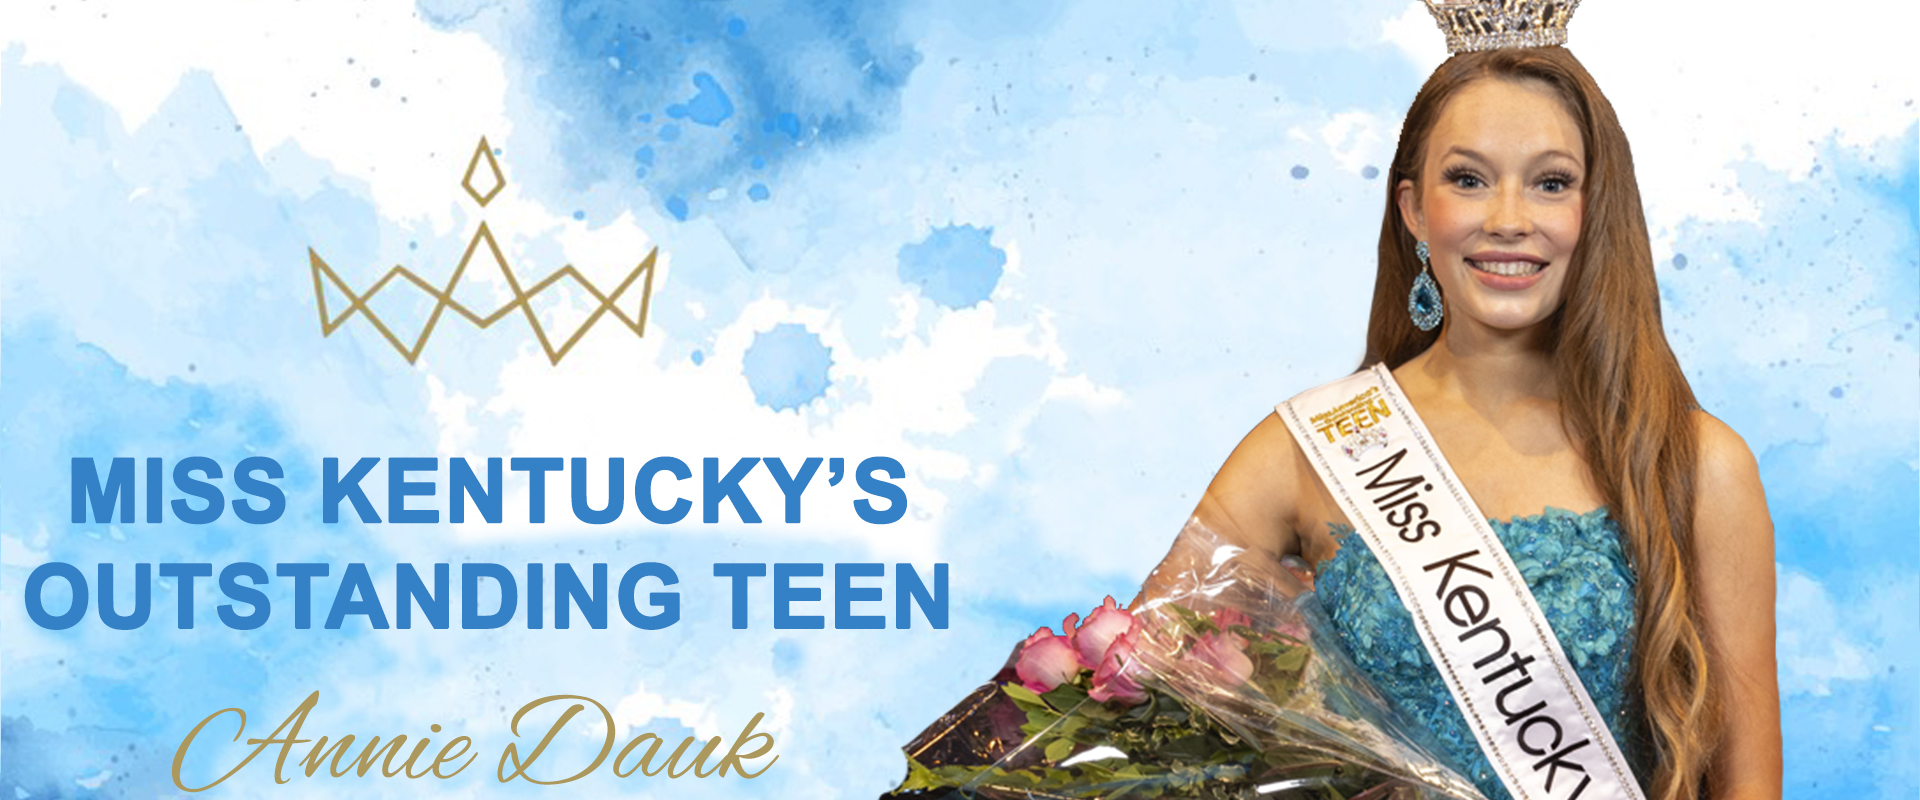 Miss Kentucky's Outstanding Teen - Annie Dauk